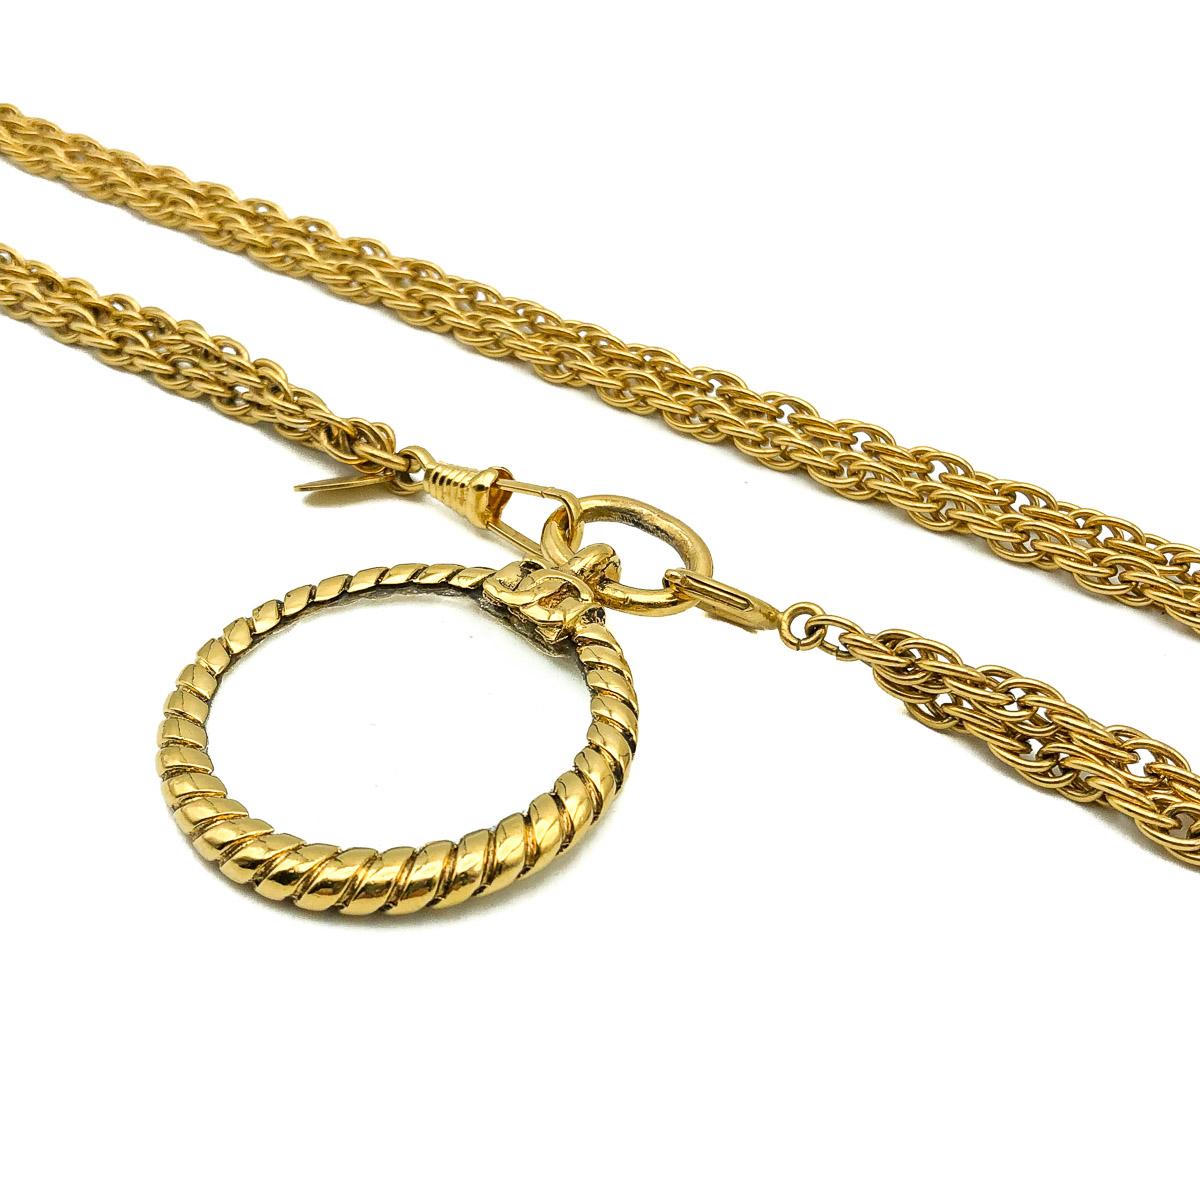 Un superbe collier vintage Chanel en forme de miroir. Réalisée en métal doré et sertie d'une loupe ornée du logo iconique de la maison Chanel, les C emboîtés.  Objet vintage en très bon état. Signé. Chaîne d'environ 94 cm et pendentif de 5,5 cm.